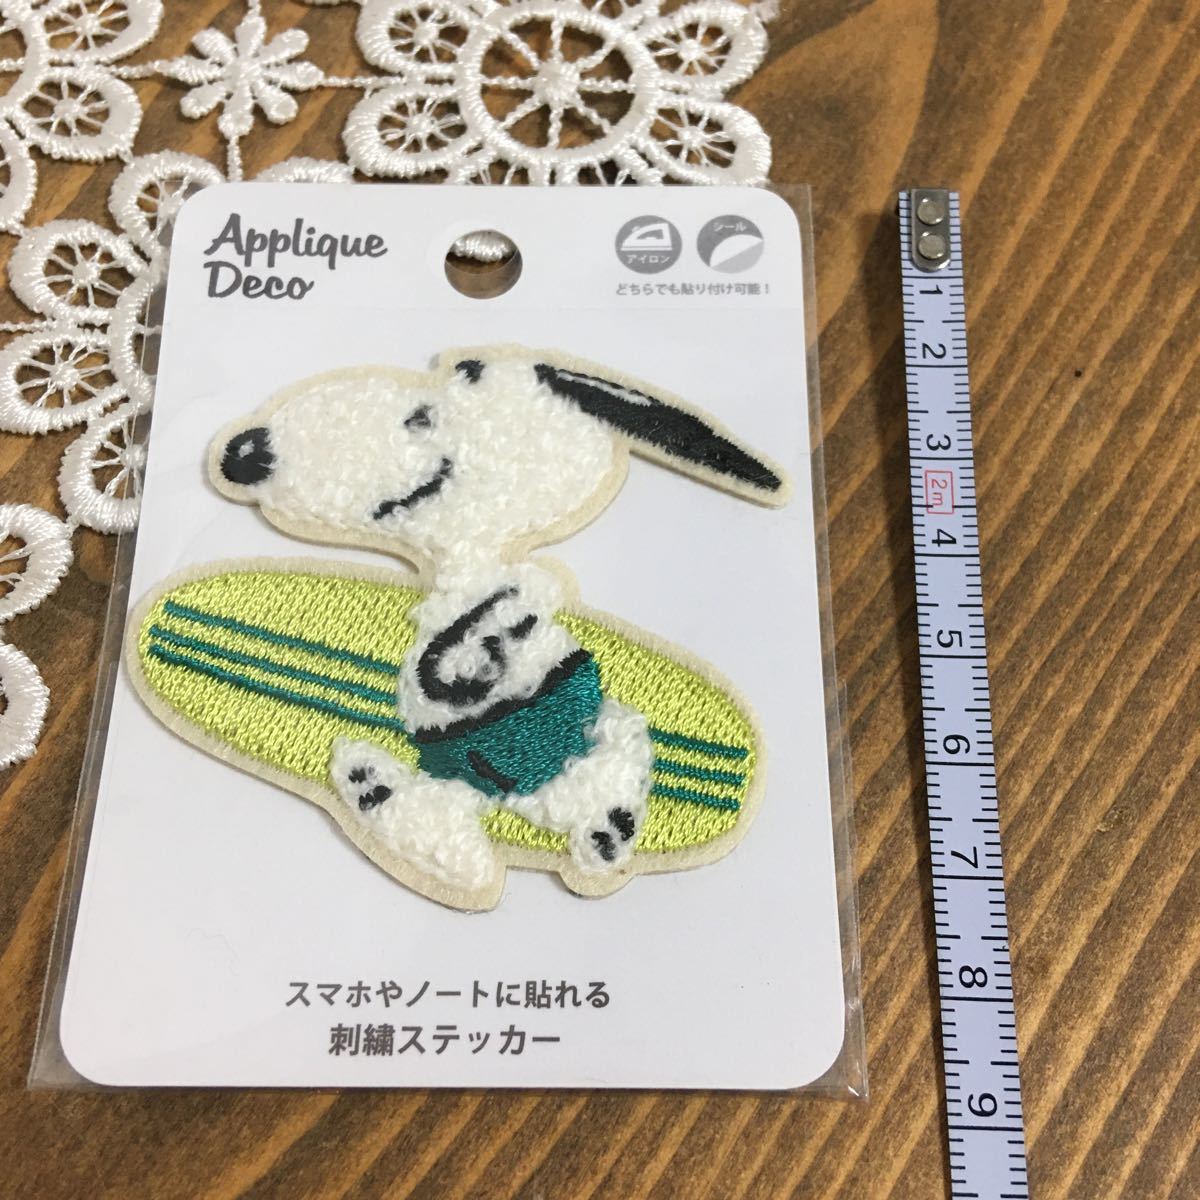  Snoopy нашивка новый товар нераспечатанный стоимость доставки 84 иен вышивка ste Car Up like декоративный элемент серфинг 